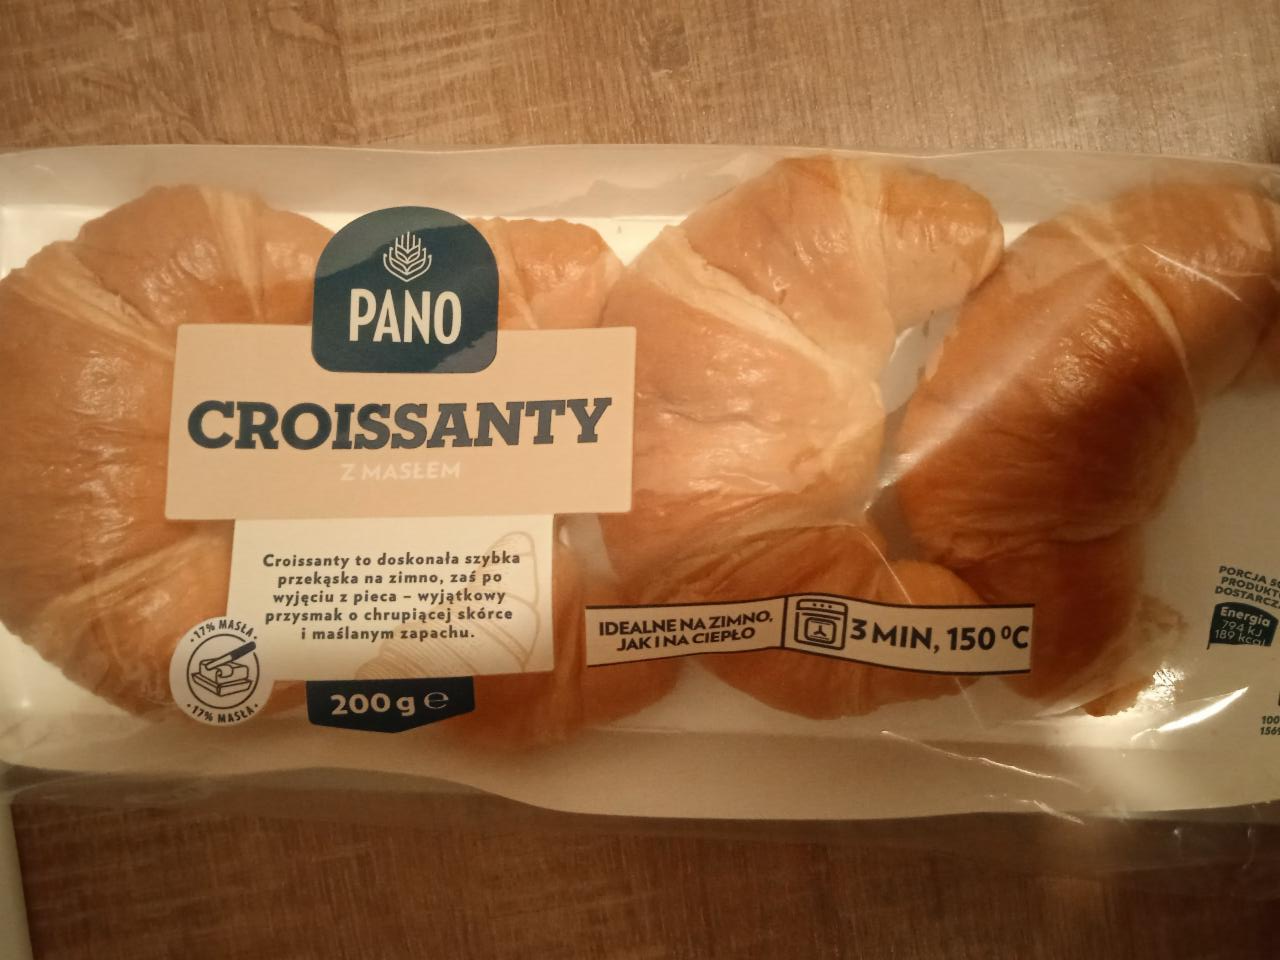 Zdjęcia - Croissanty z masłem PANO